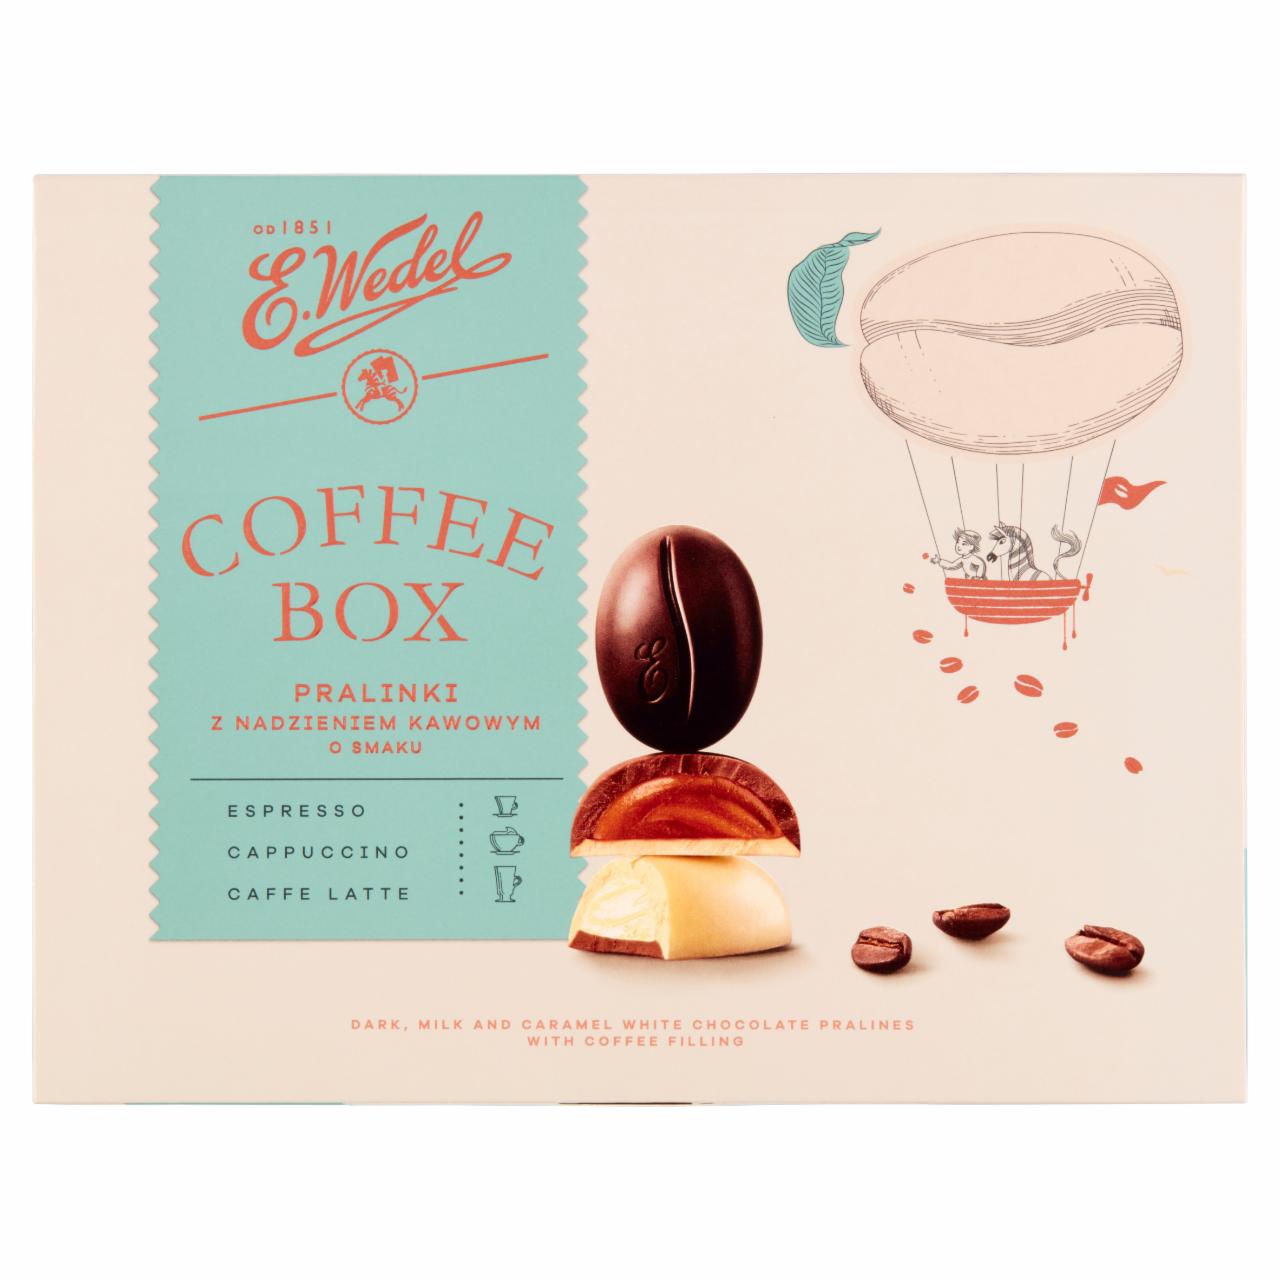 Zdjęcia - E. Wedel Coffee Box Pralinki z nadzieniem kawowym o smaku espresso cappuccino caffe latte 100 g